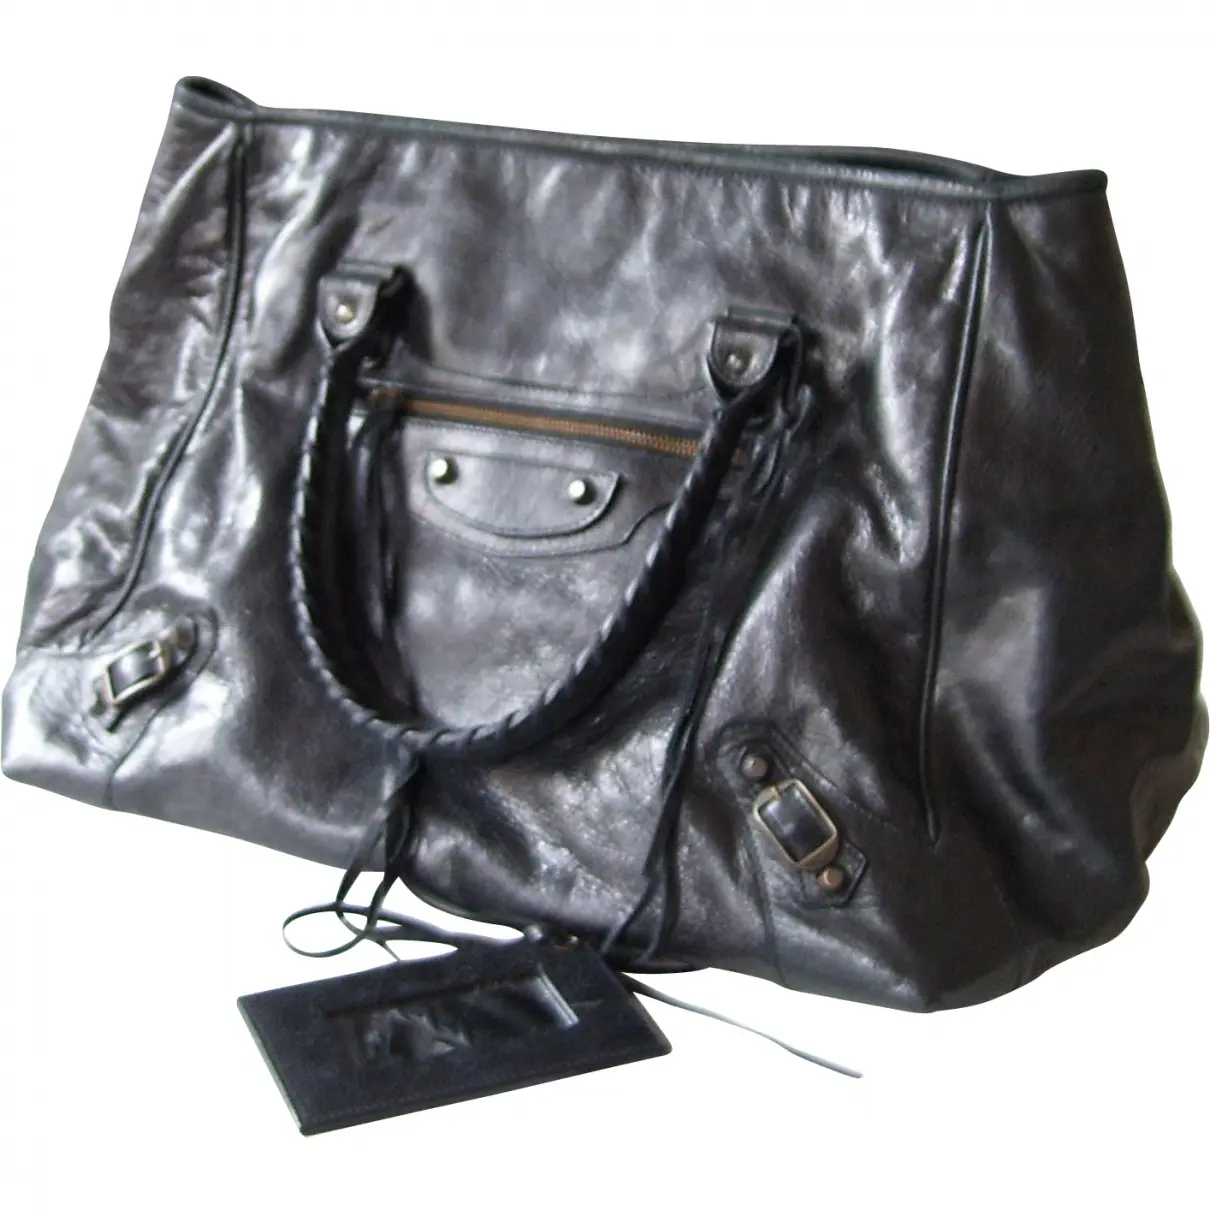 Black Leather Handbag Balenciaga